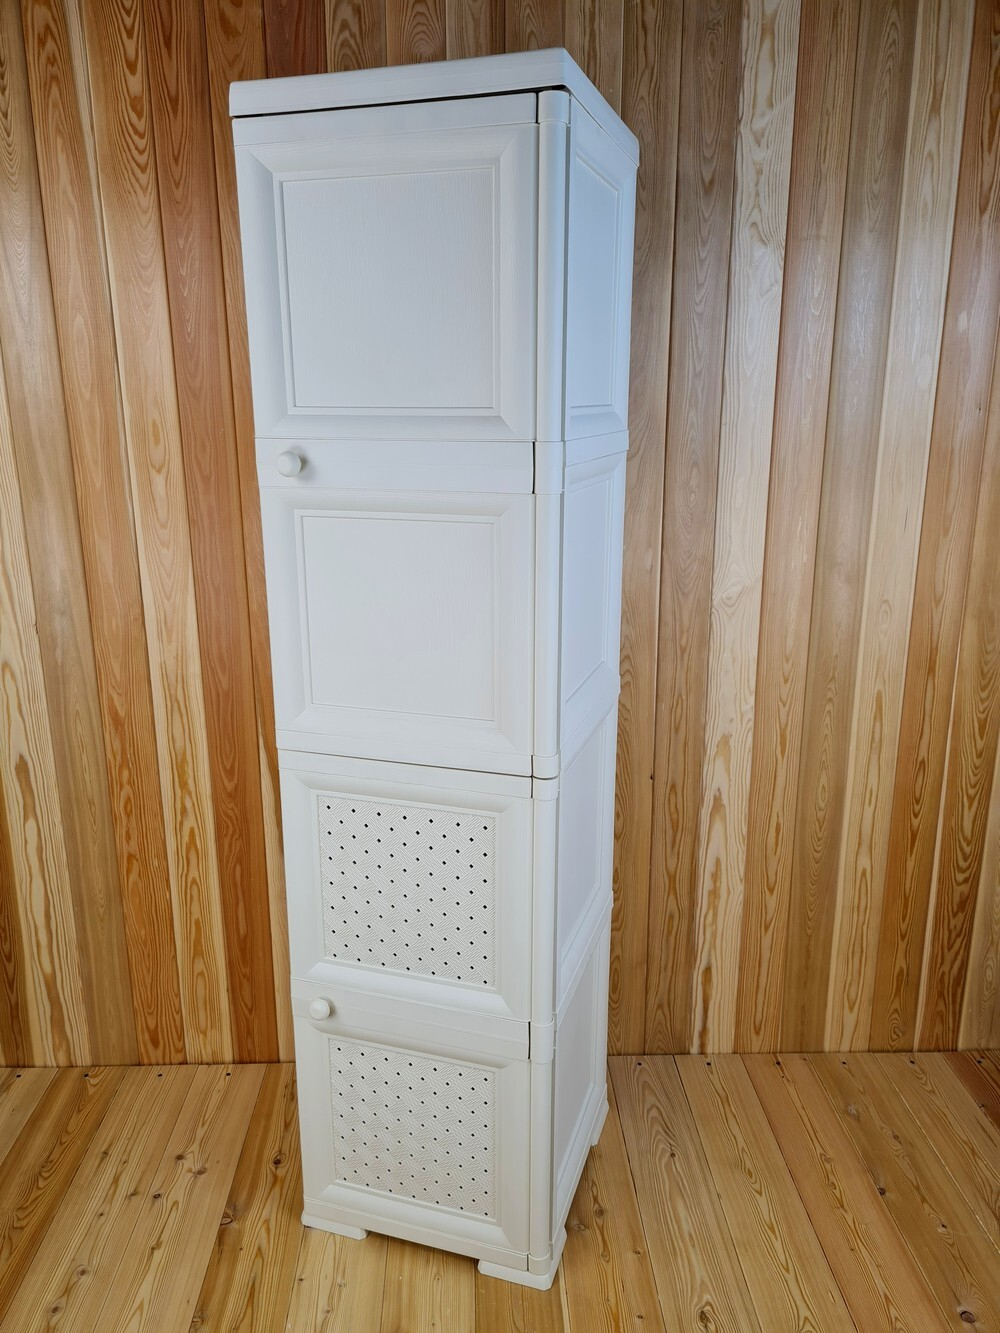 Шкаф высокий, с усиленными рёбрами жёсткости "УЮТ", 40,5х42х161,5 h, 2 дверцы. Цвет: Бежевый (Слоновая кость). Арт: Э-047-Б